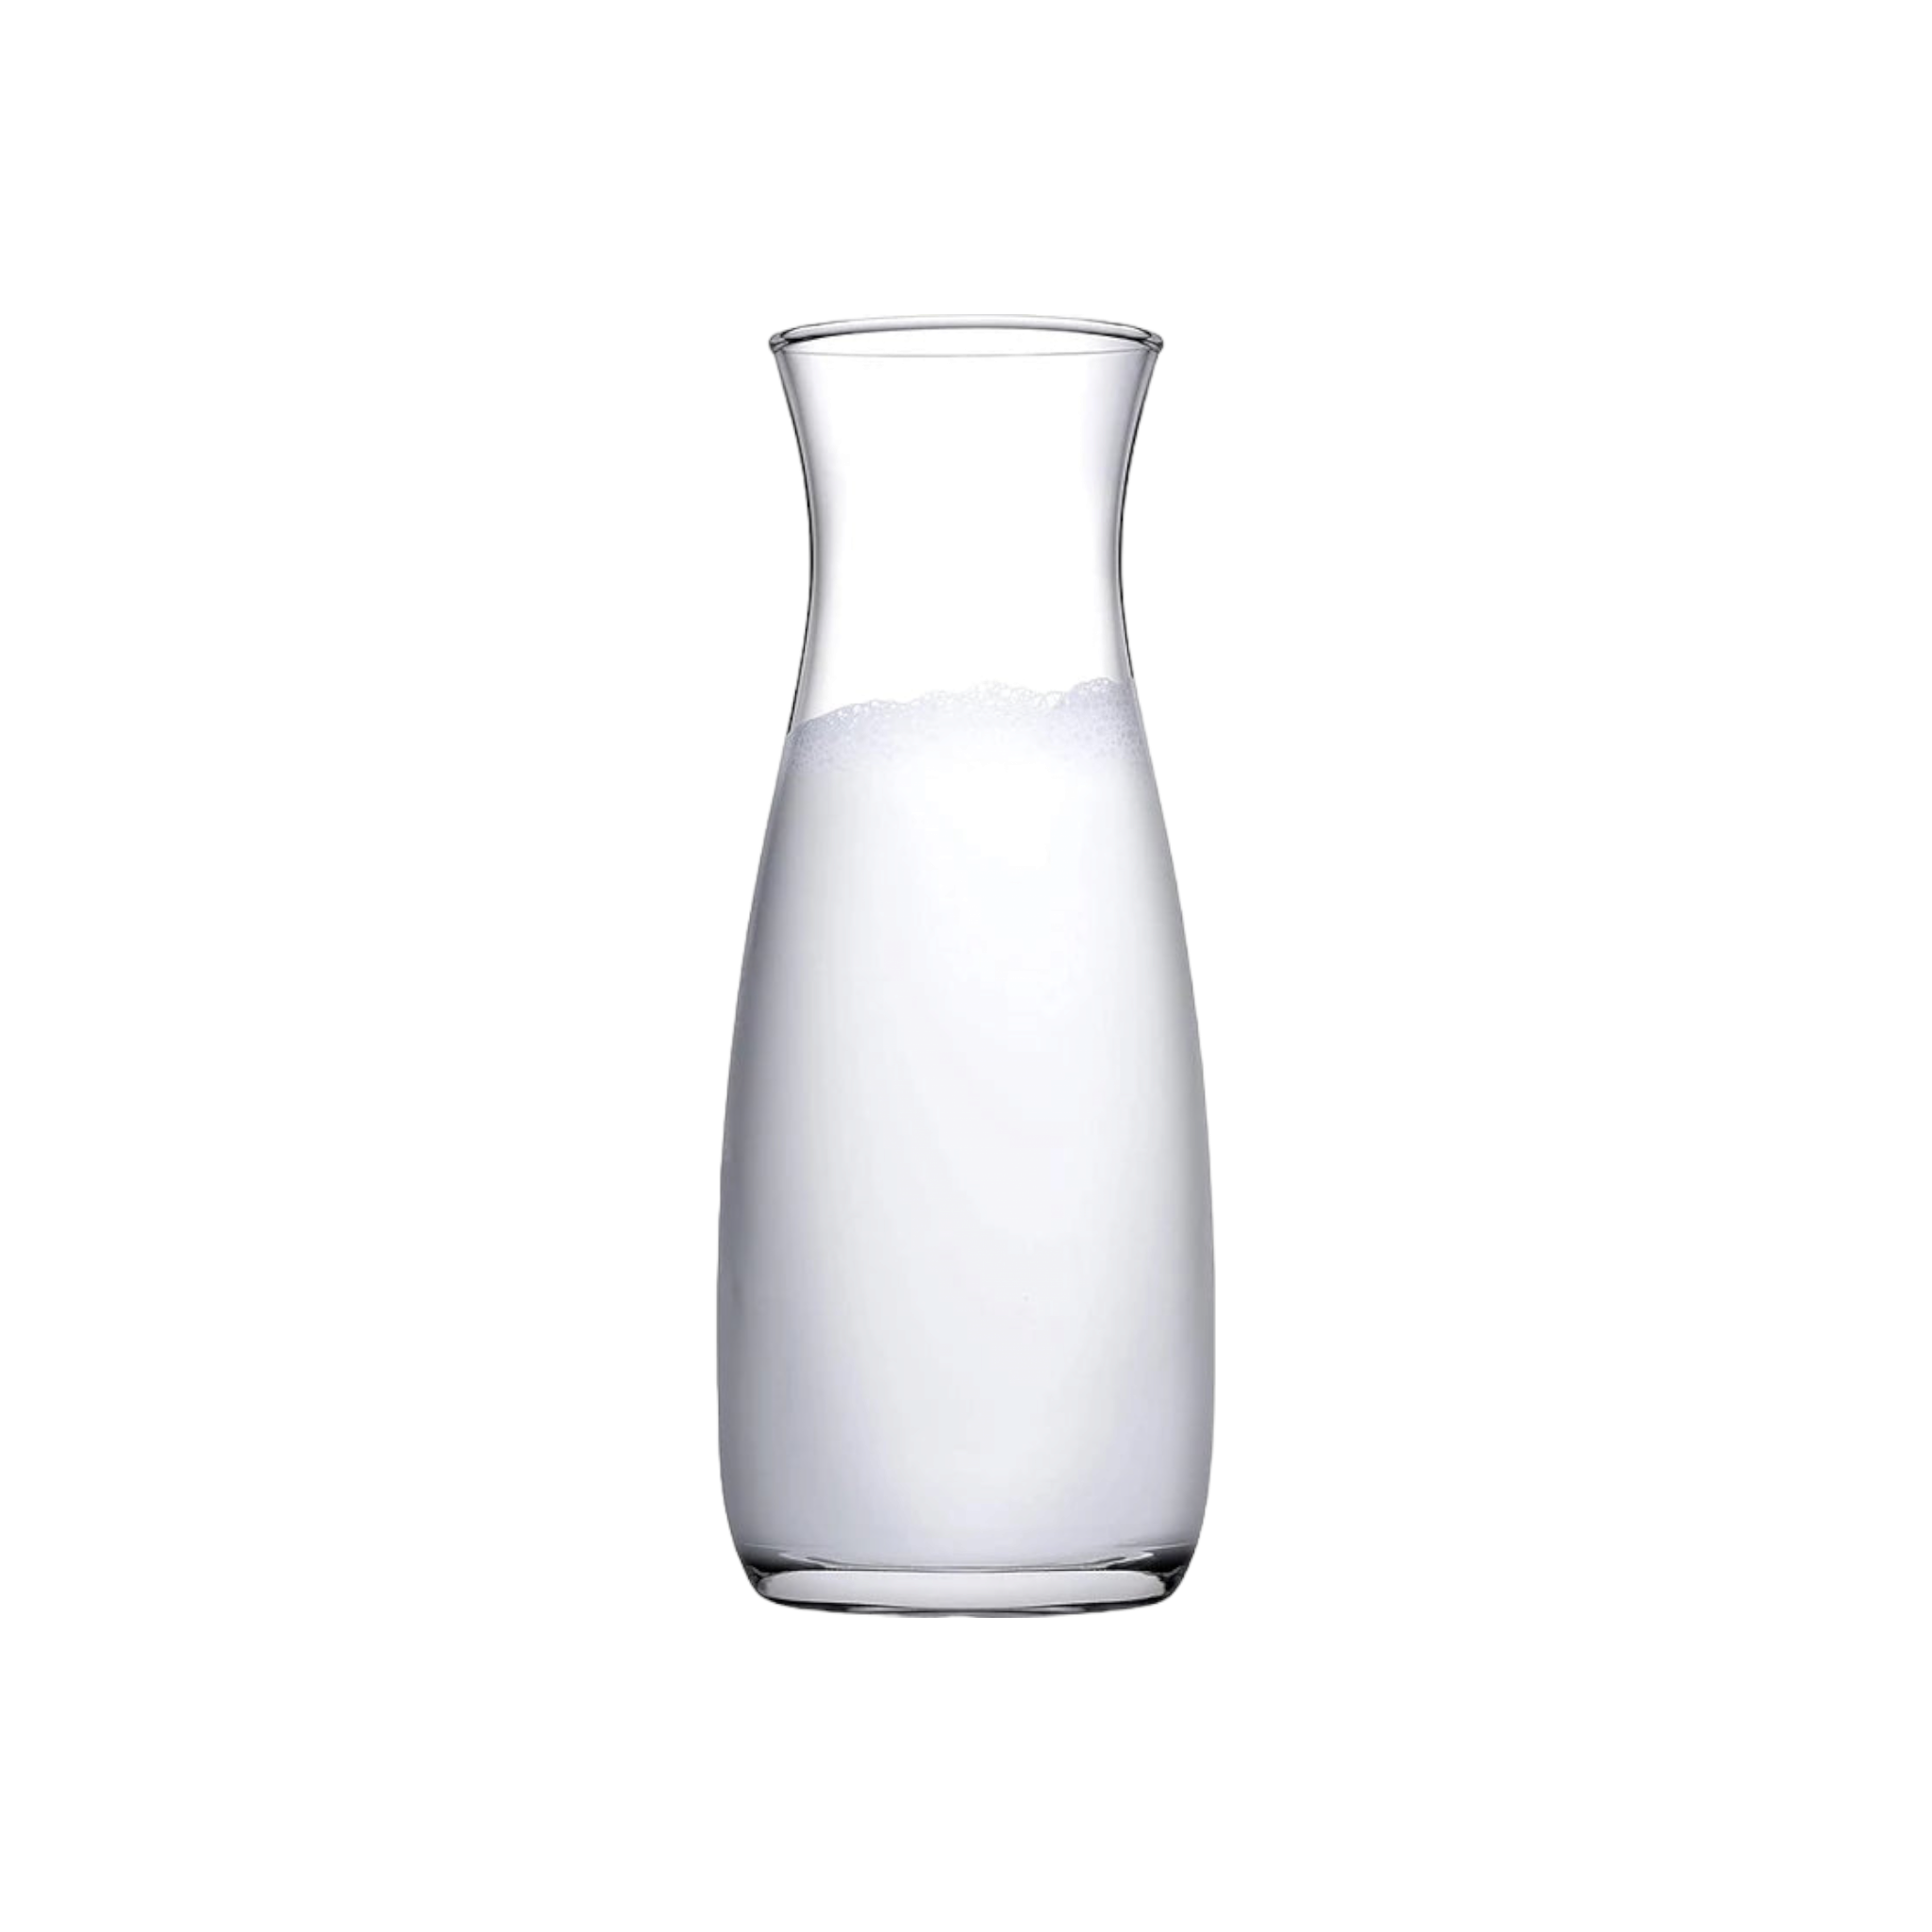 Pasabahce Glass Carafe Amphora 1.18L Each 23928